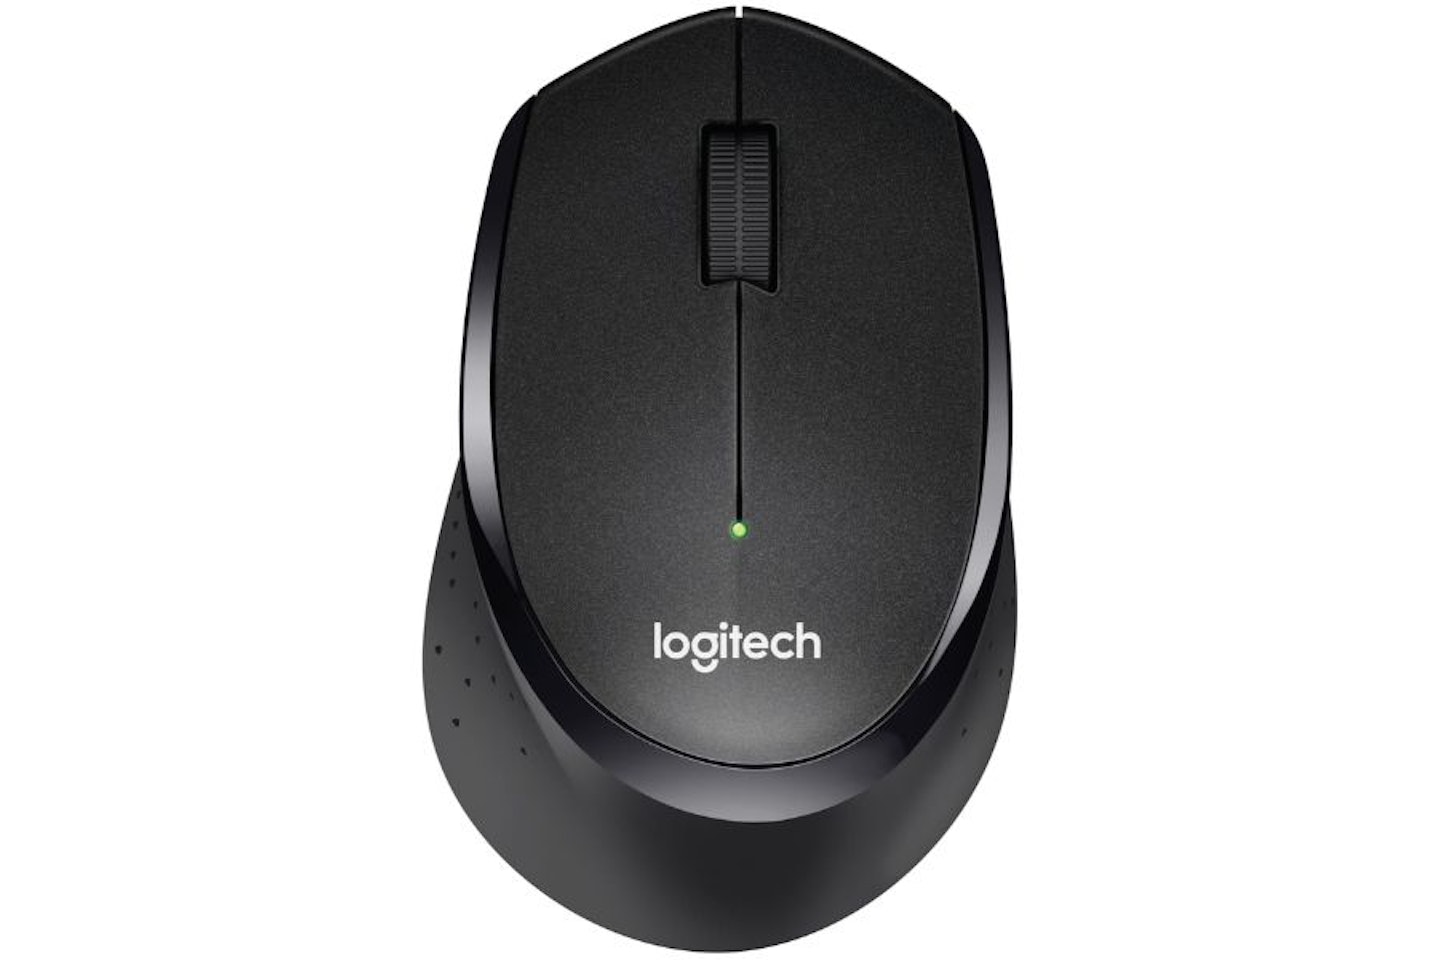 Logitech M330 SILENT PLUS Wireless Mouse